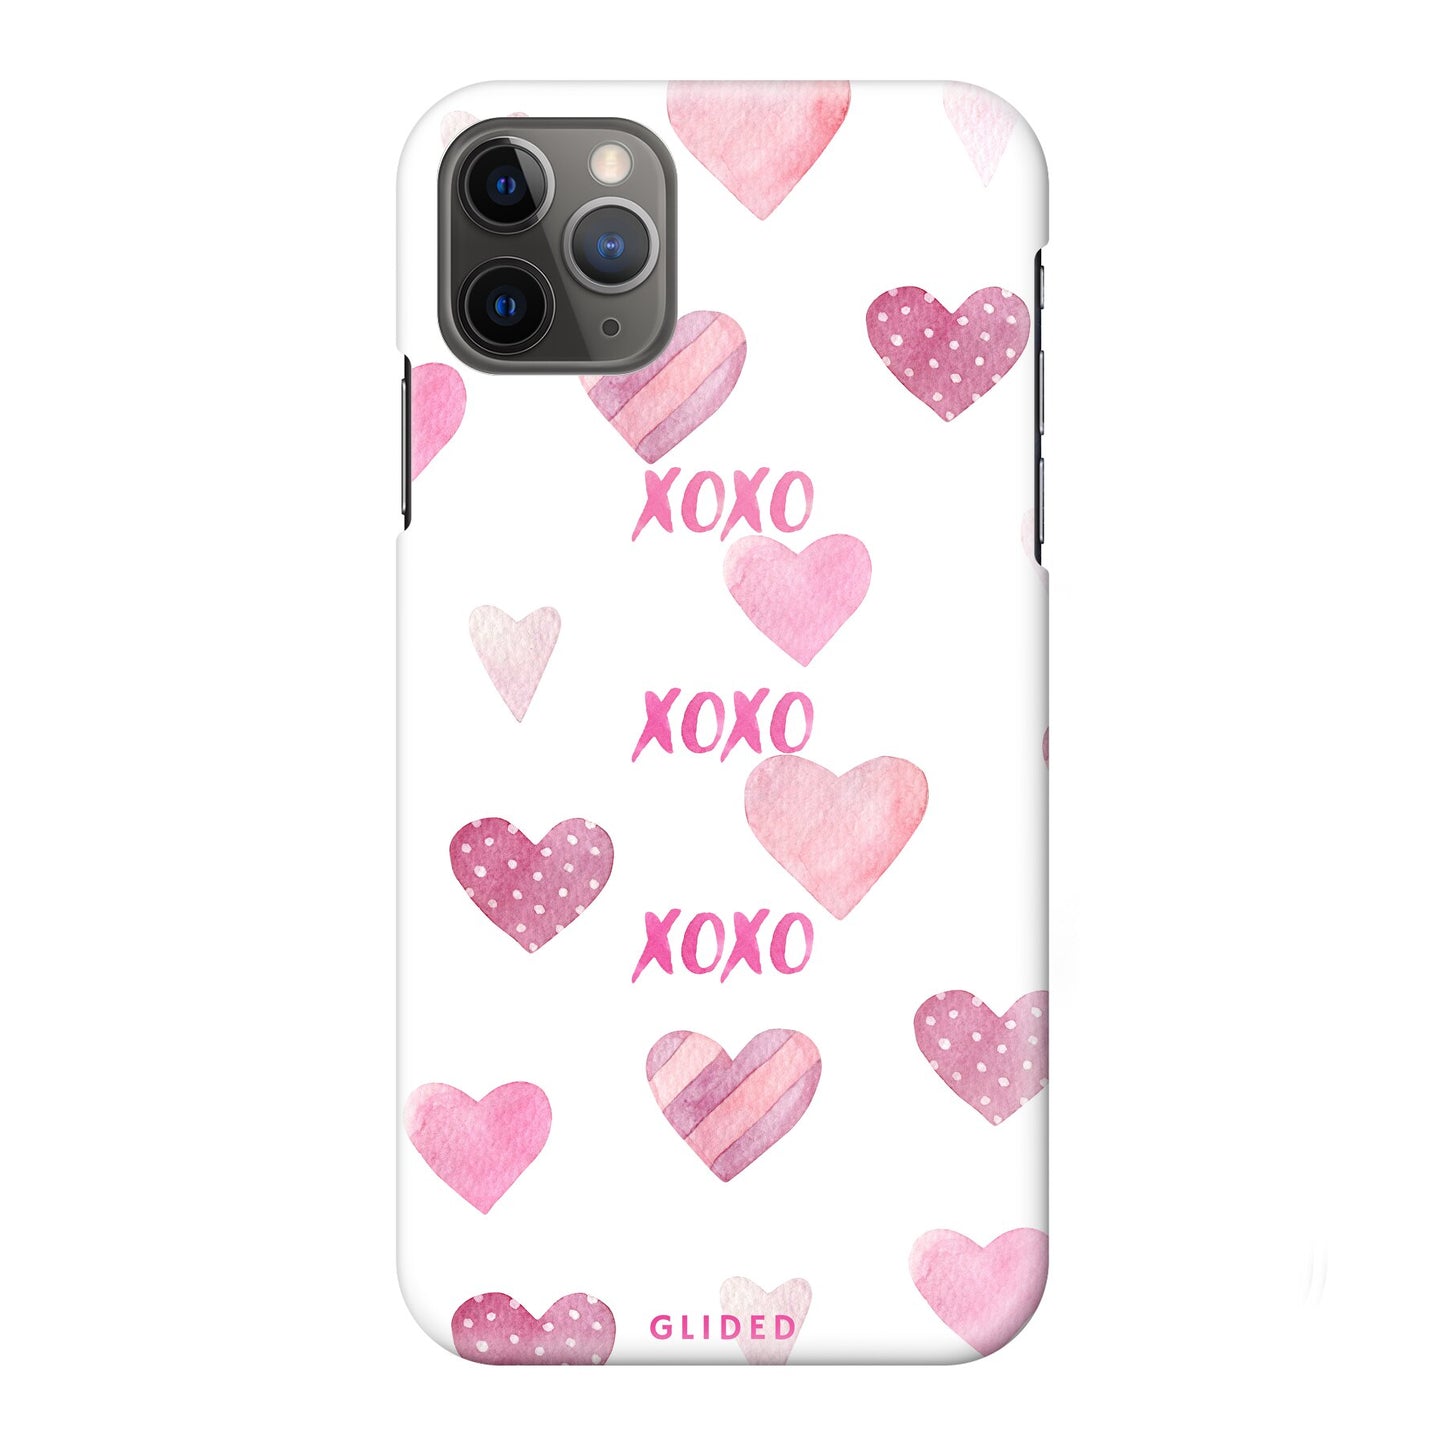 Xoxo - iPhone 11 Pro Max - Hard Case